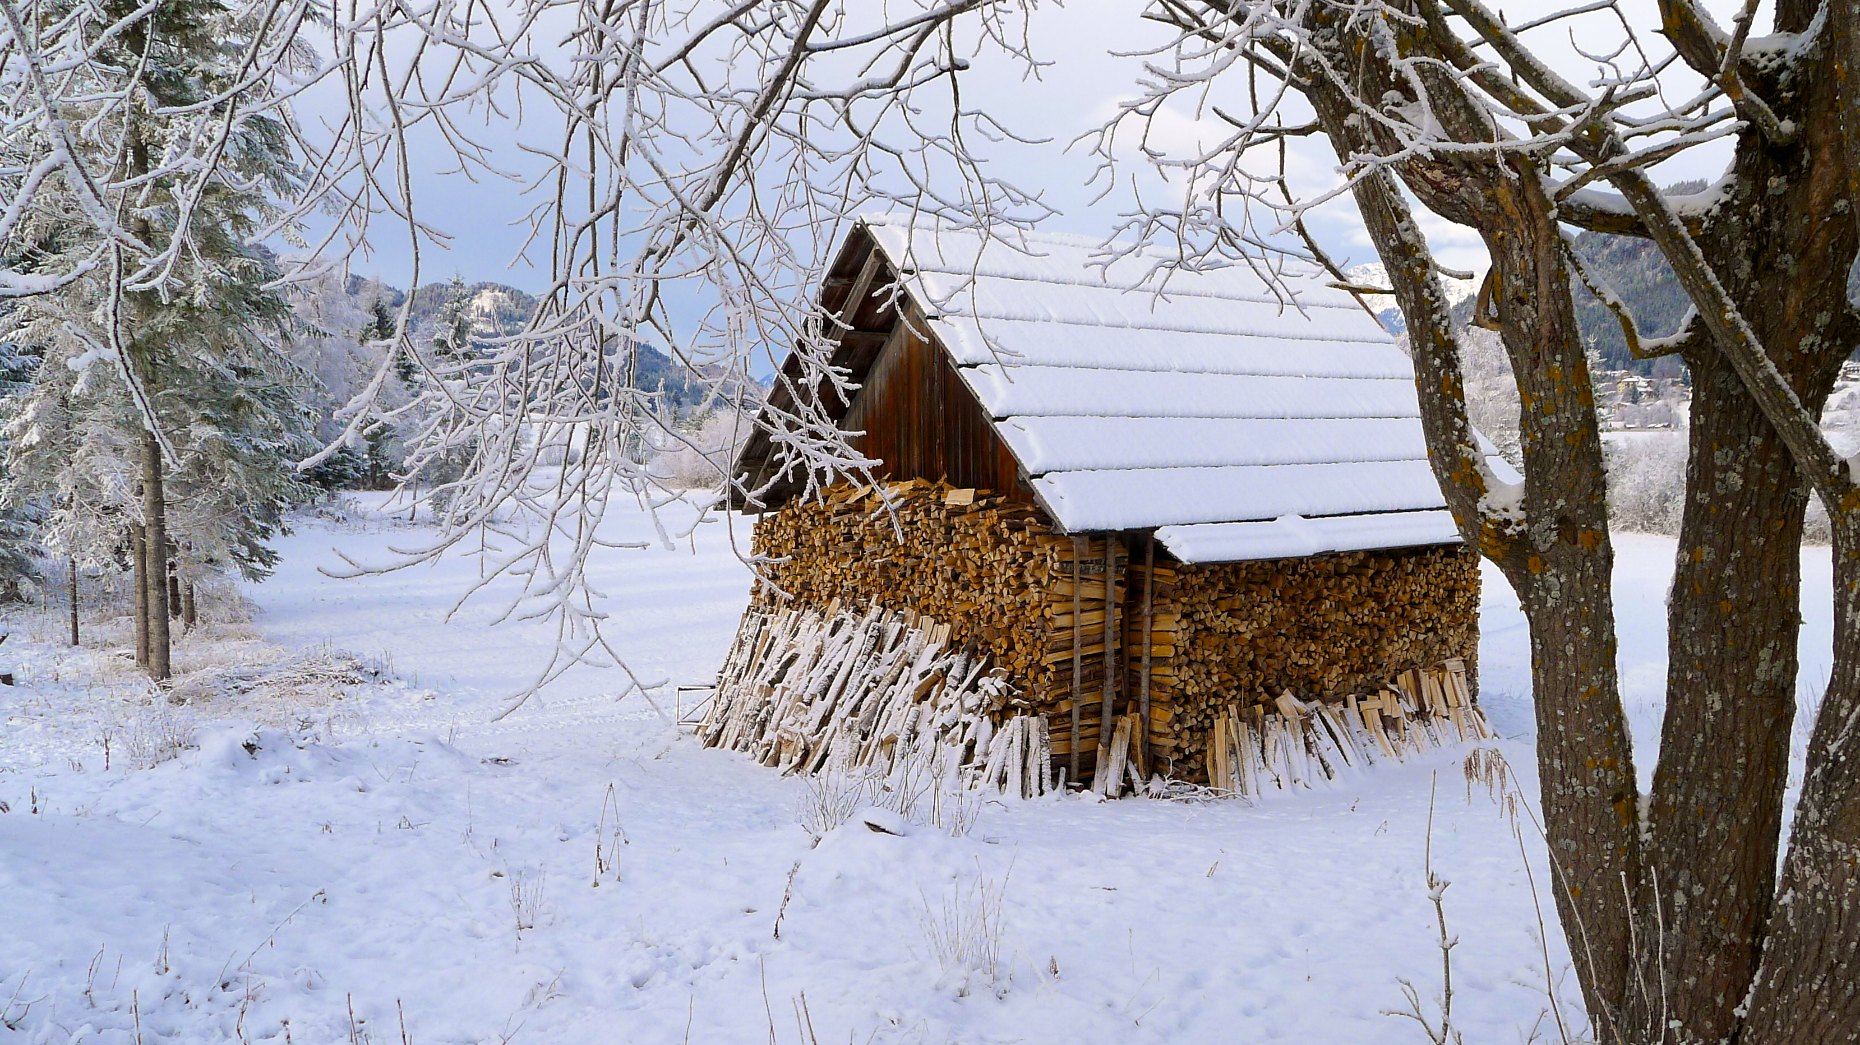 Austria Weissensee winter snow